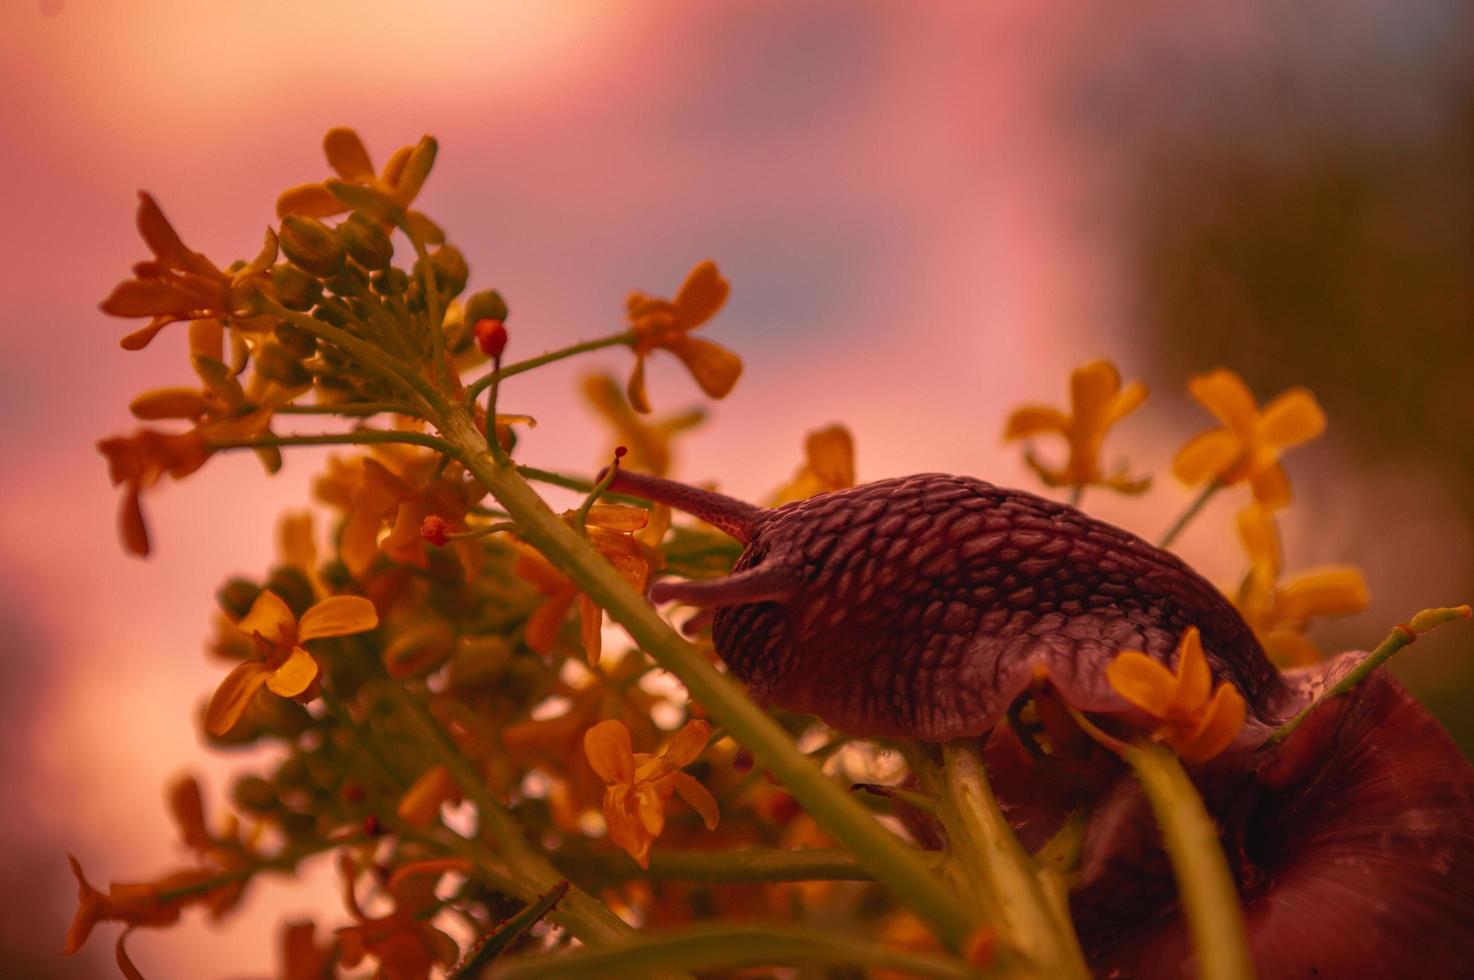 Bourgondische slak bij zonsondergang in donkerrode kleuren en in een natuurlijke omgeving foto